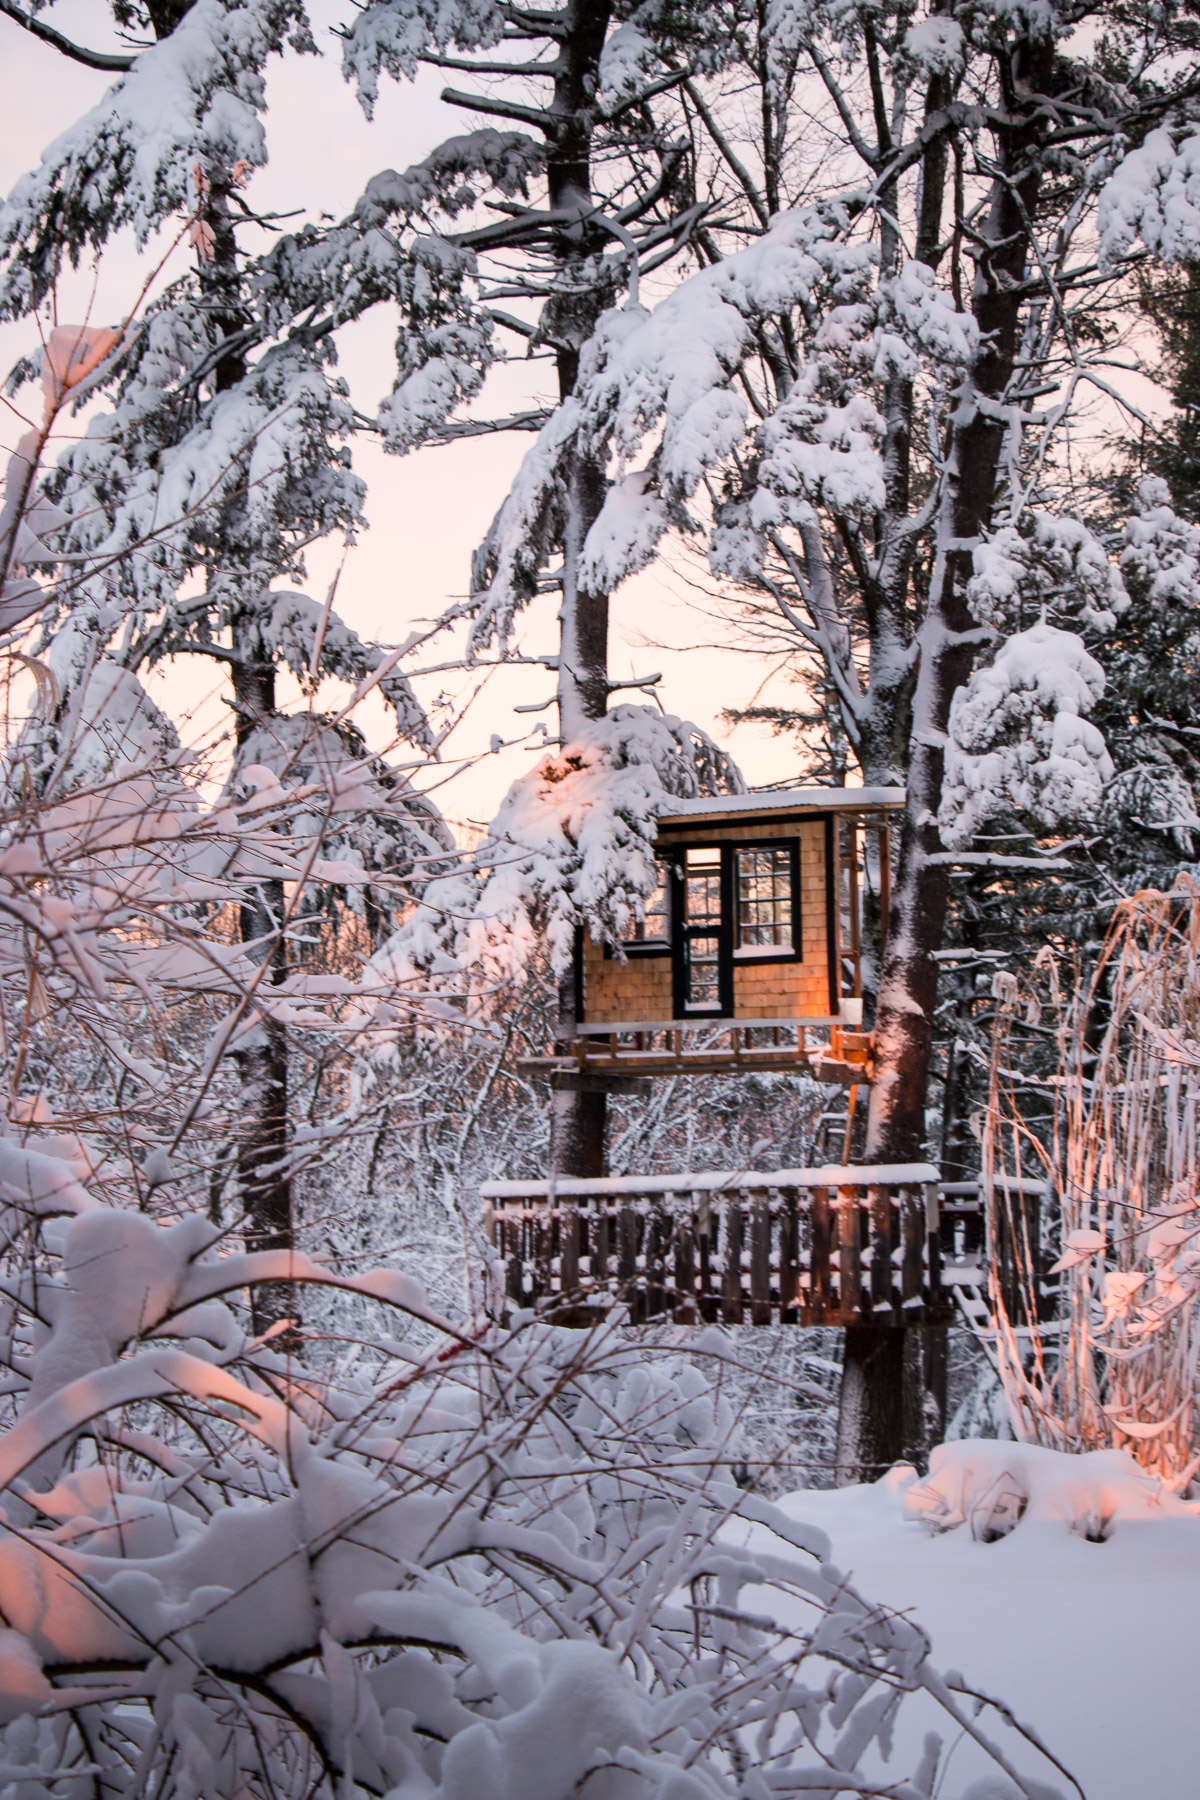 Treehouse garden folly in winter by rochelle greayer